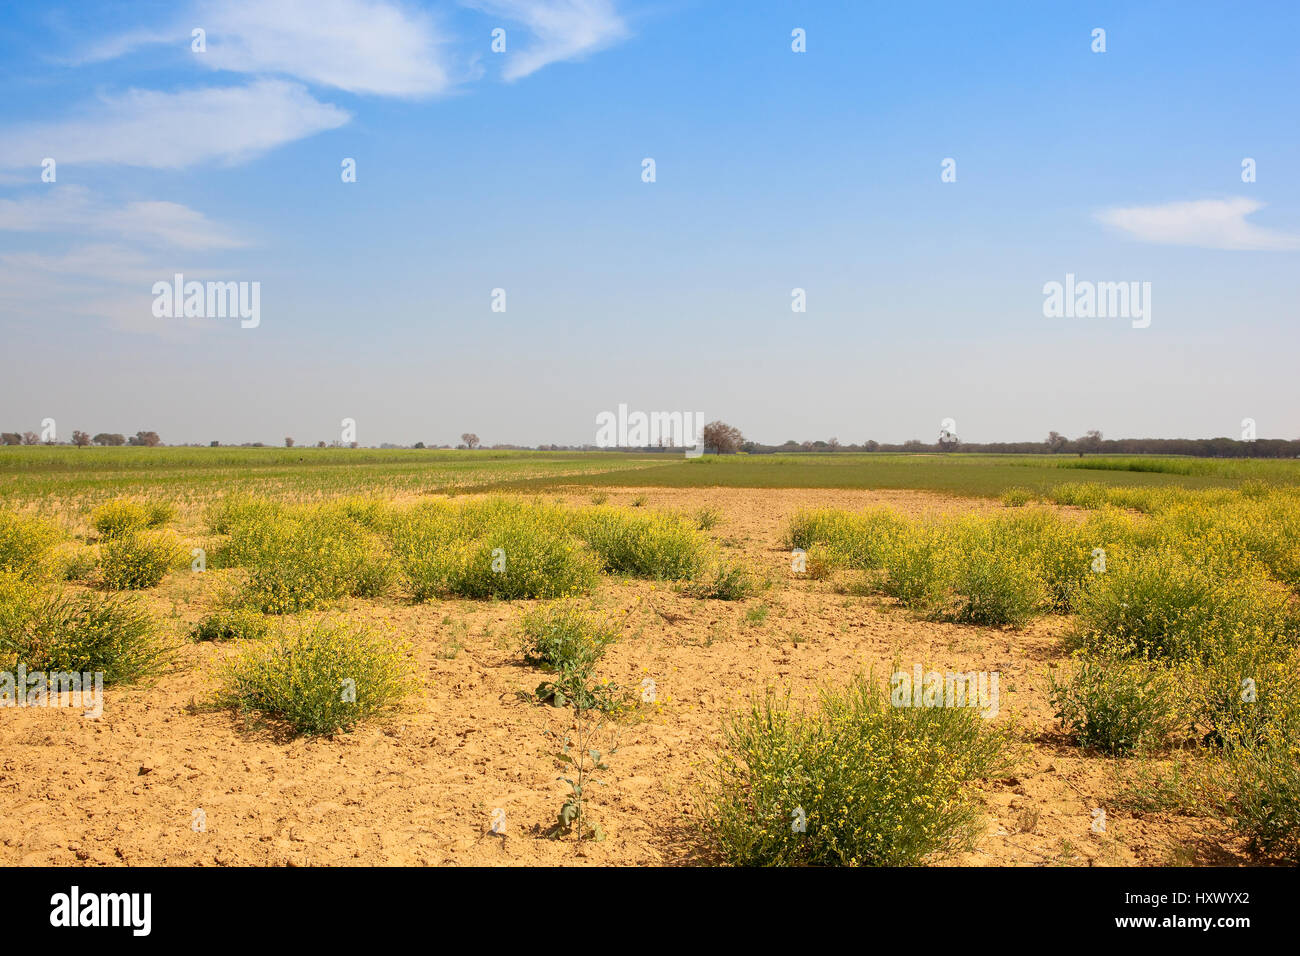 trockenen sandigen Ackerland in Rajasthan Indien mit gelben Blütenpflanzen und Senf und Weizen ernten bei bewölktem Himmel blau Stockfoto